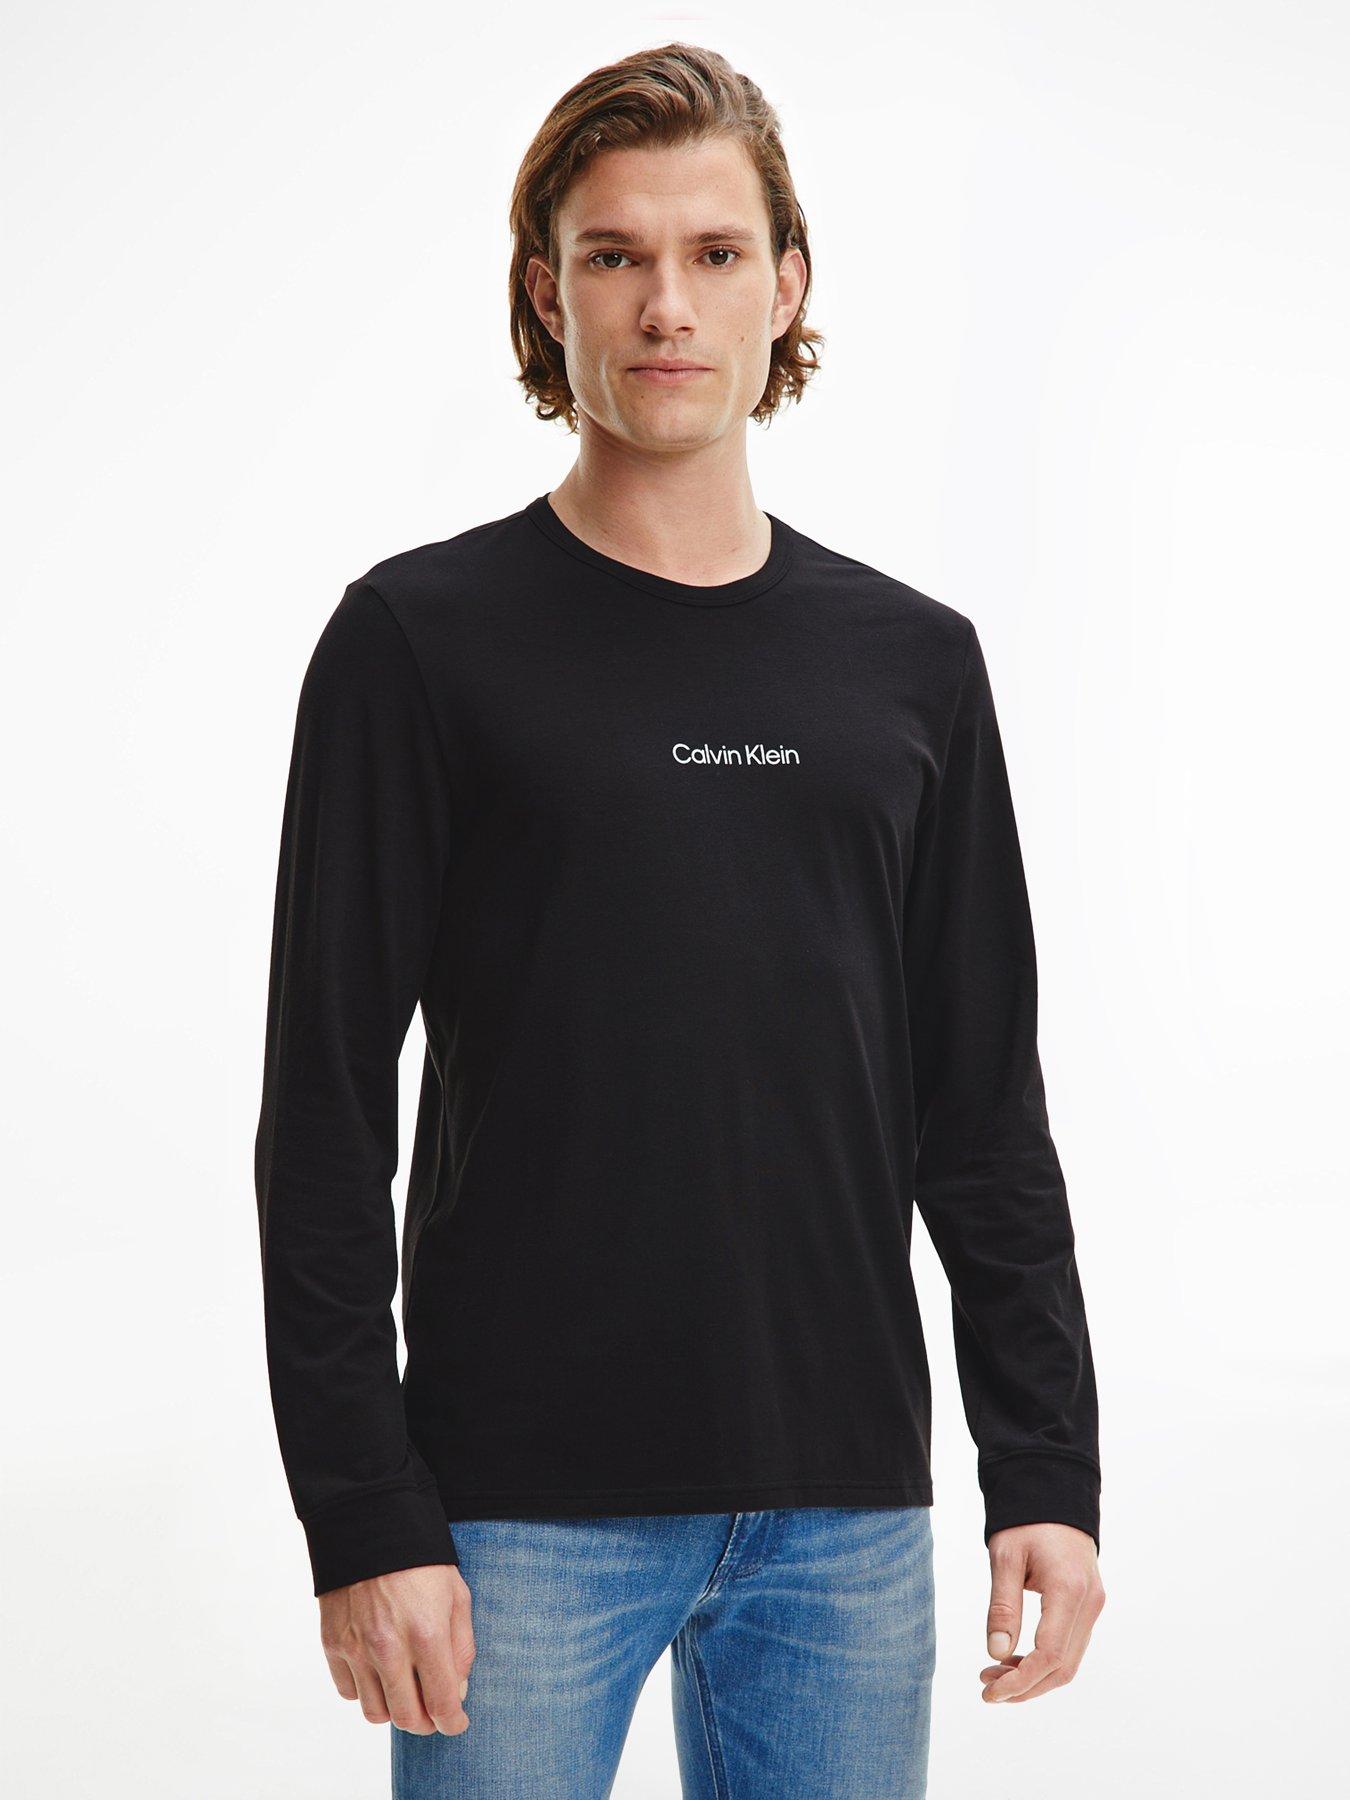 Calvin Klein Loungewear Modern Structure Long Sleeve T-Shirt